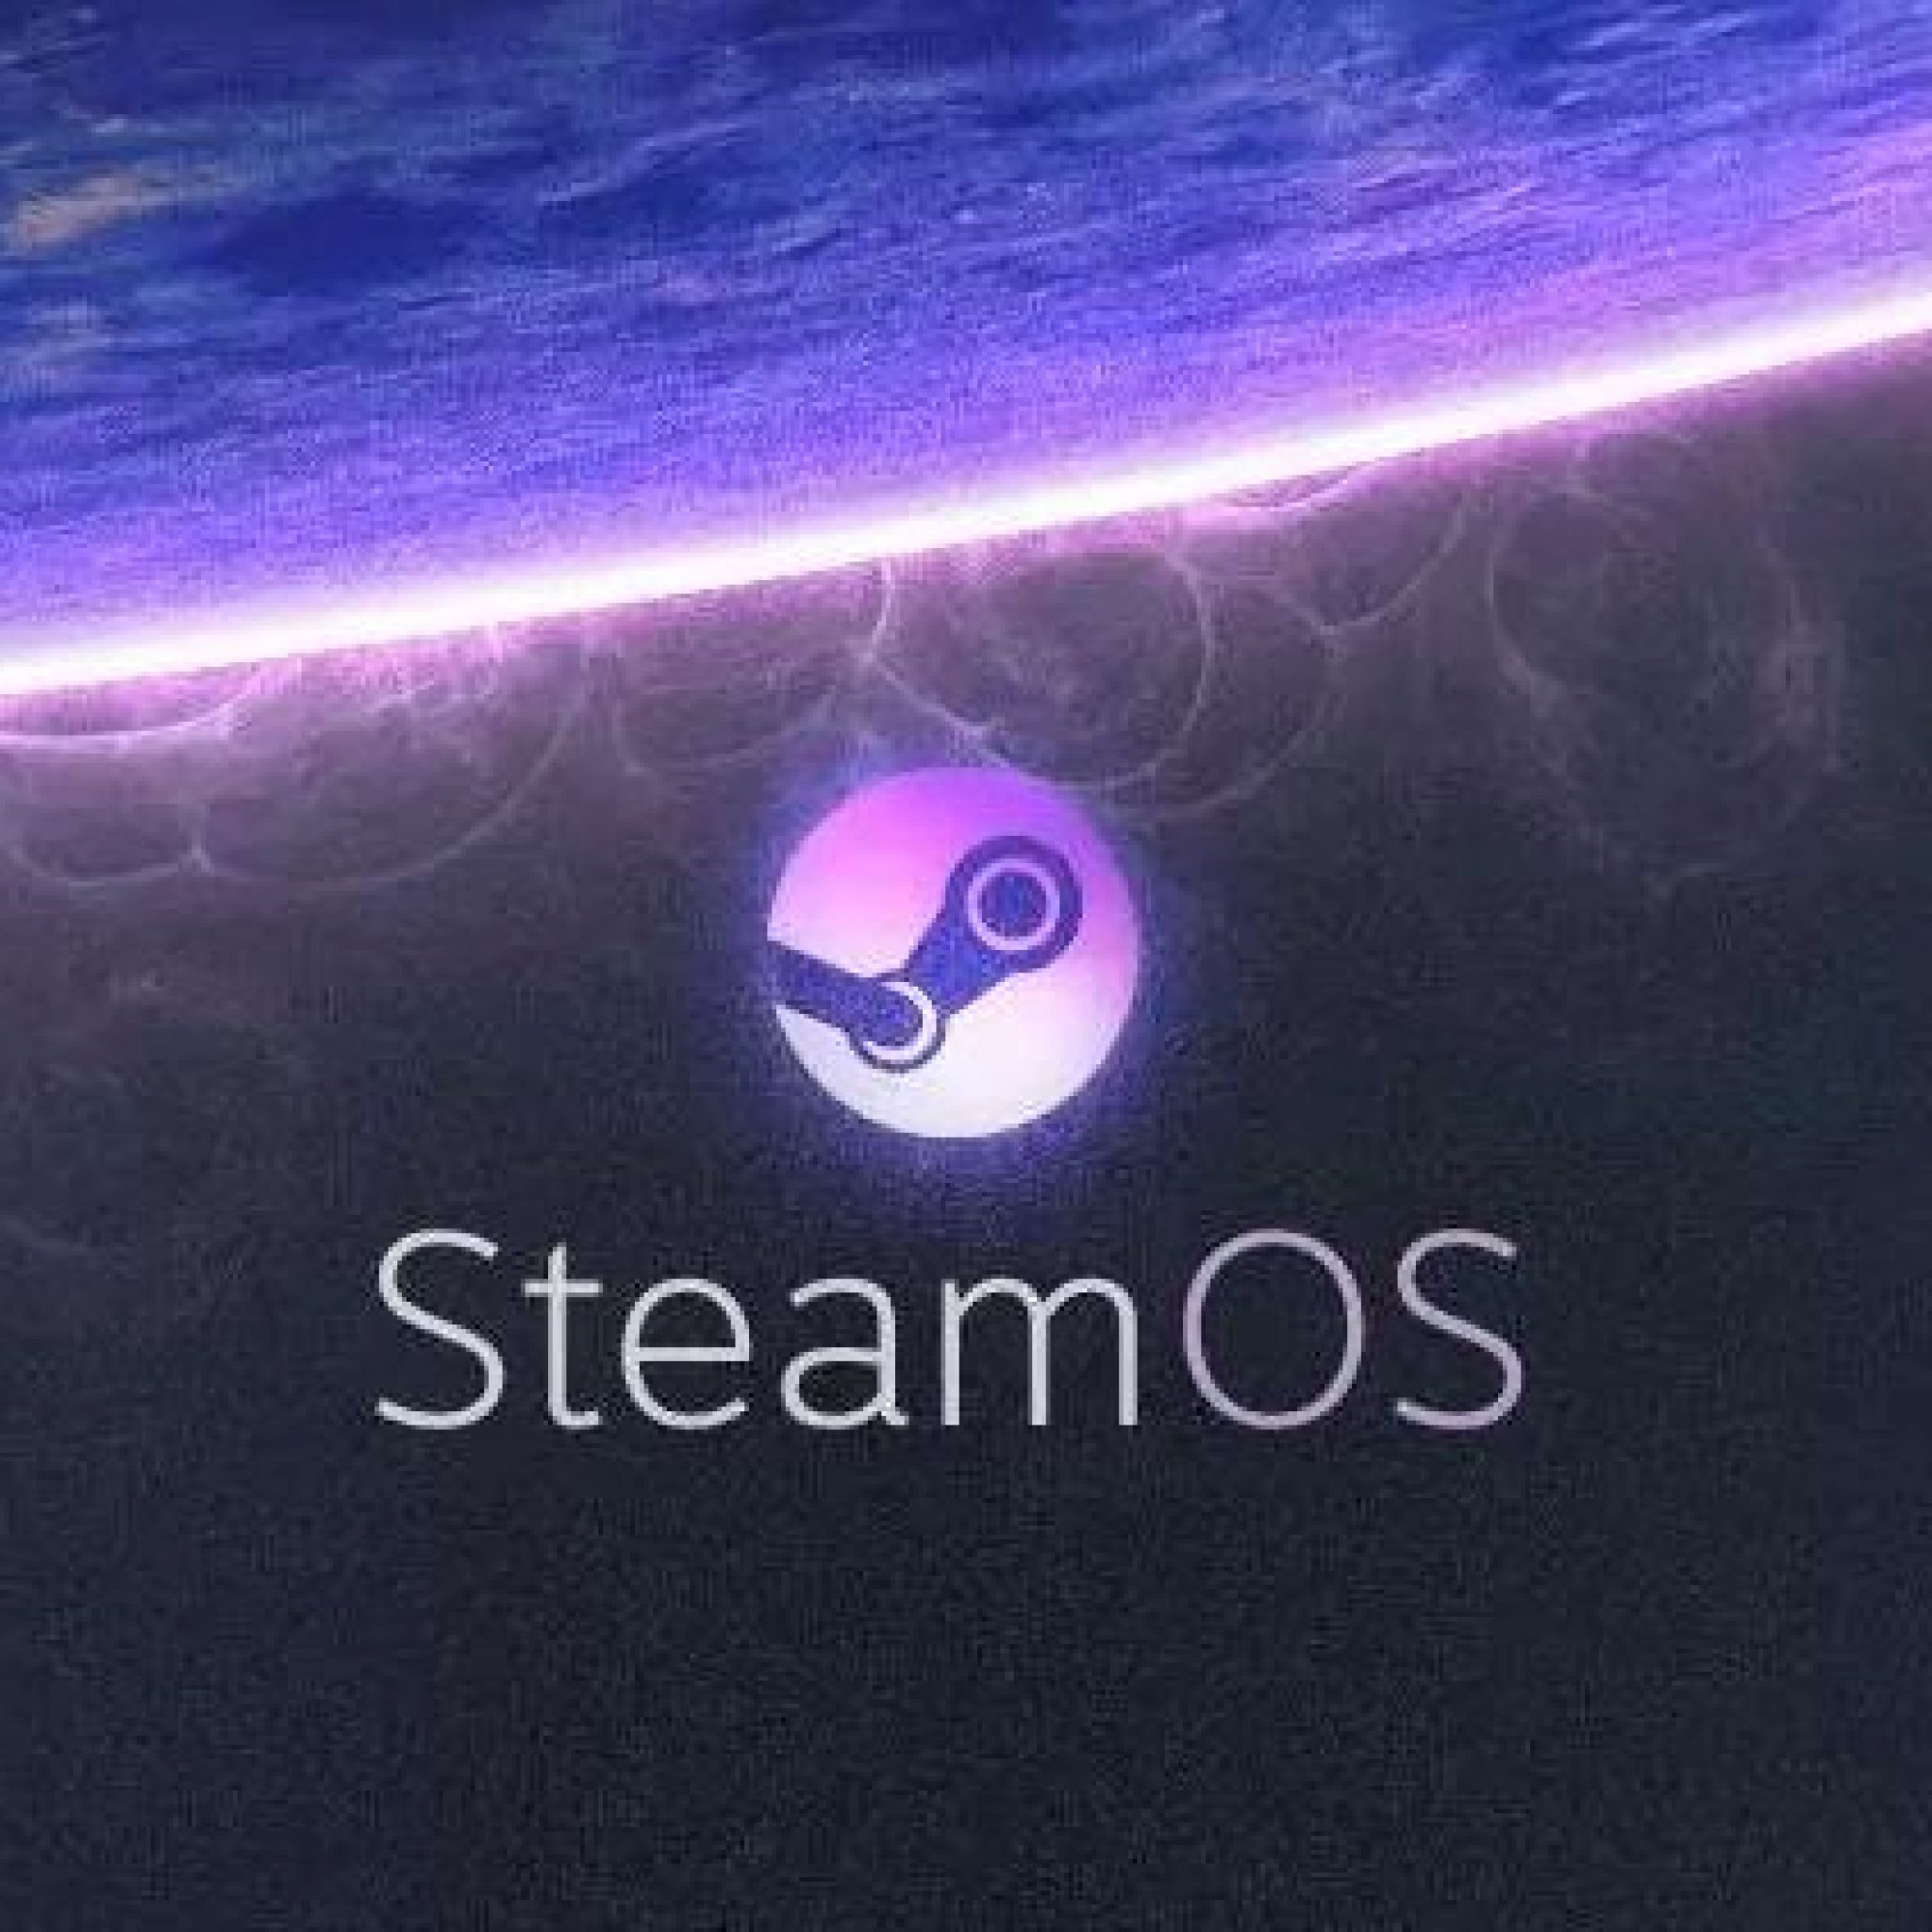 Steamos: Un Nuevo Sistema Operativo Desarrollado Por Valve Y Basado En Linux